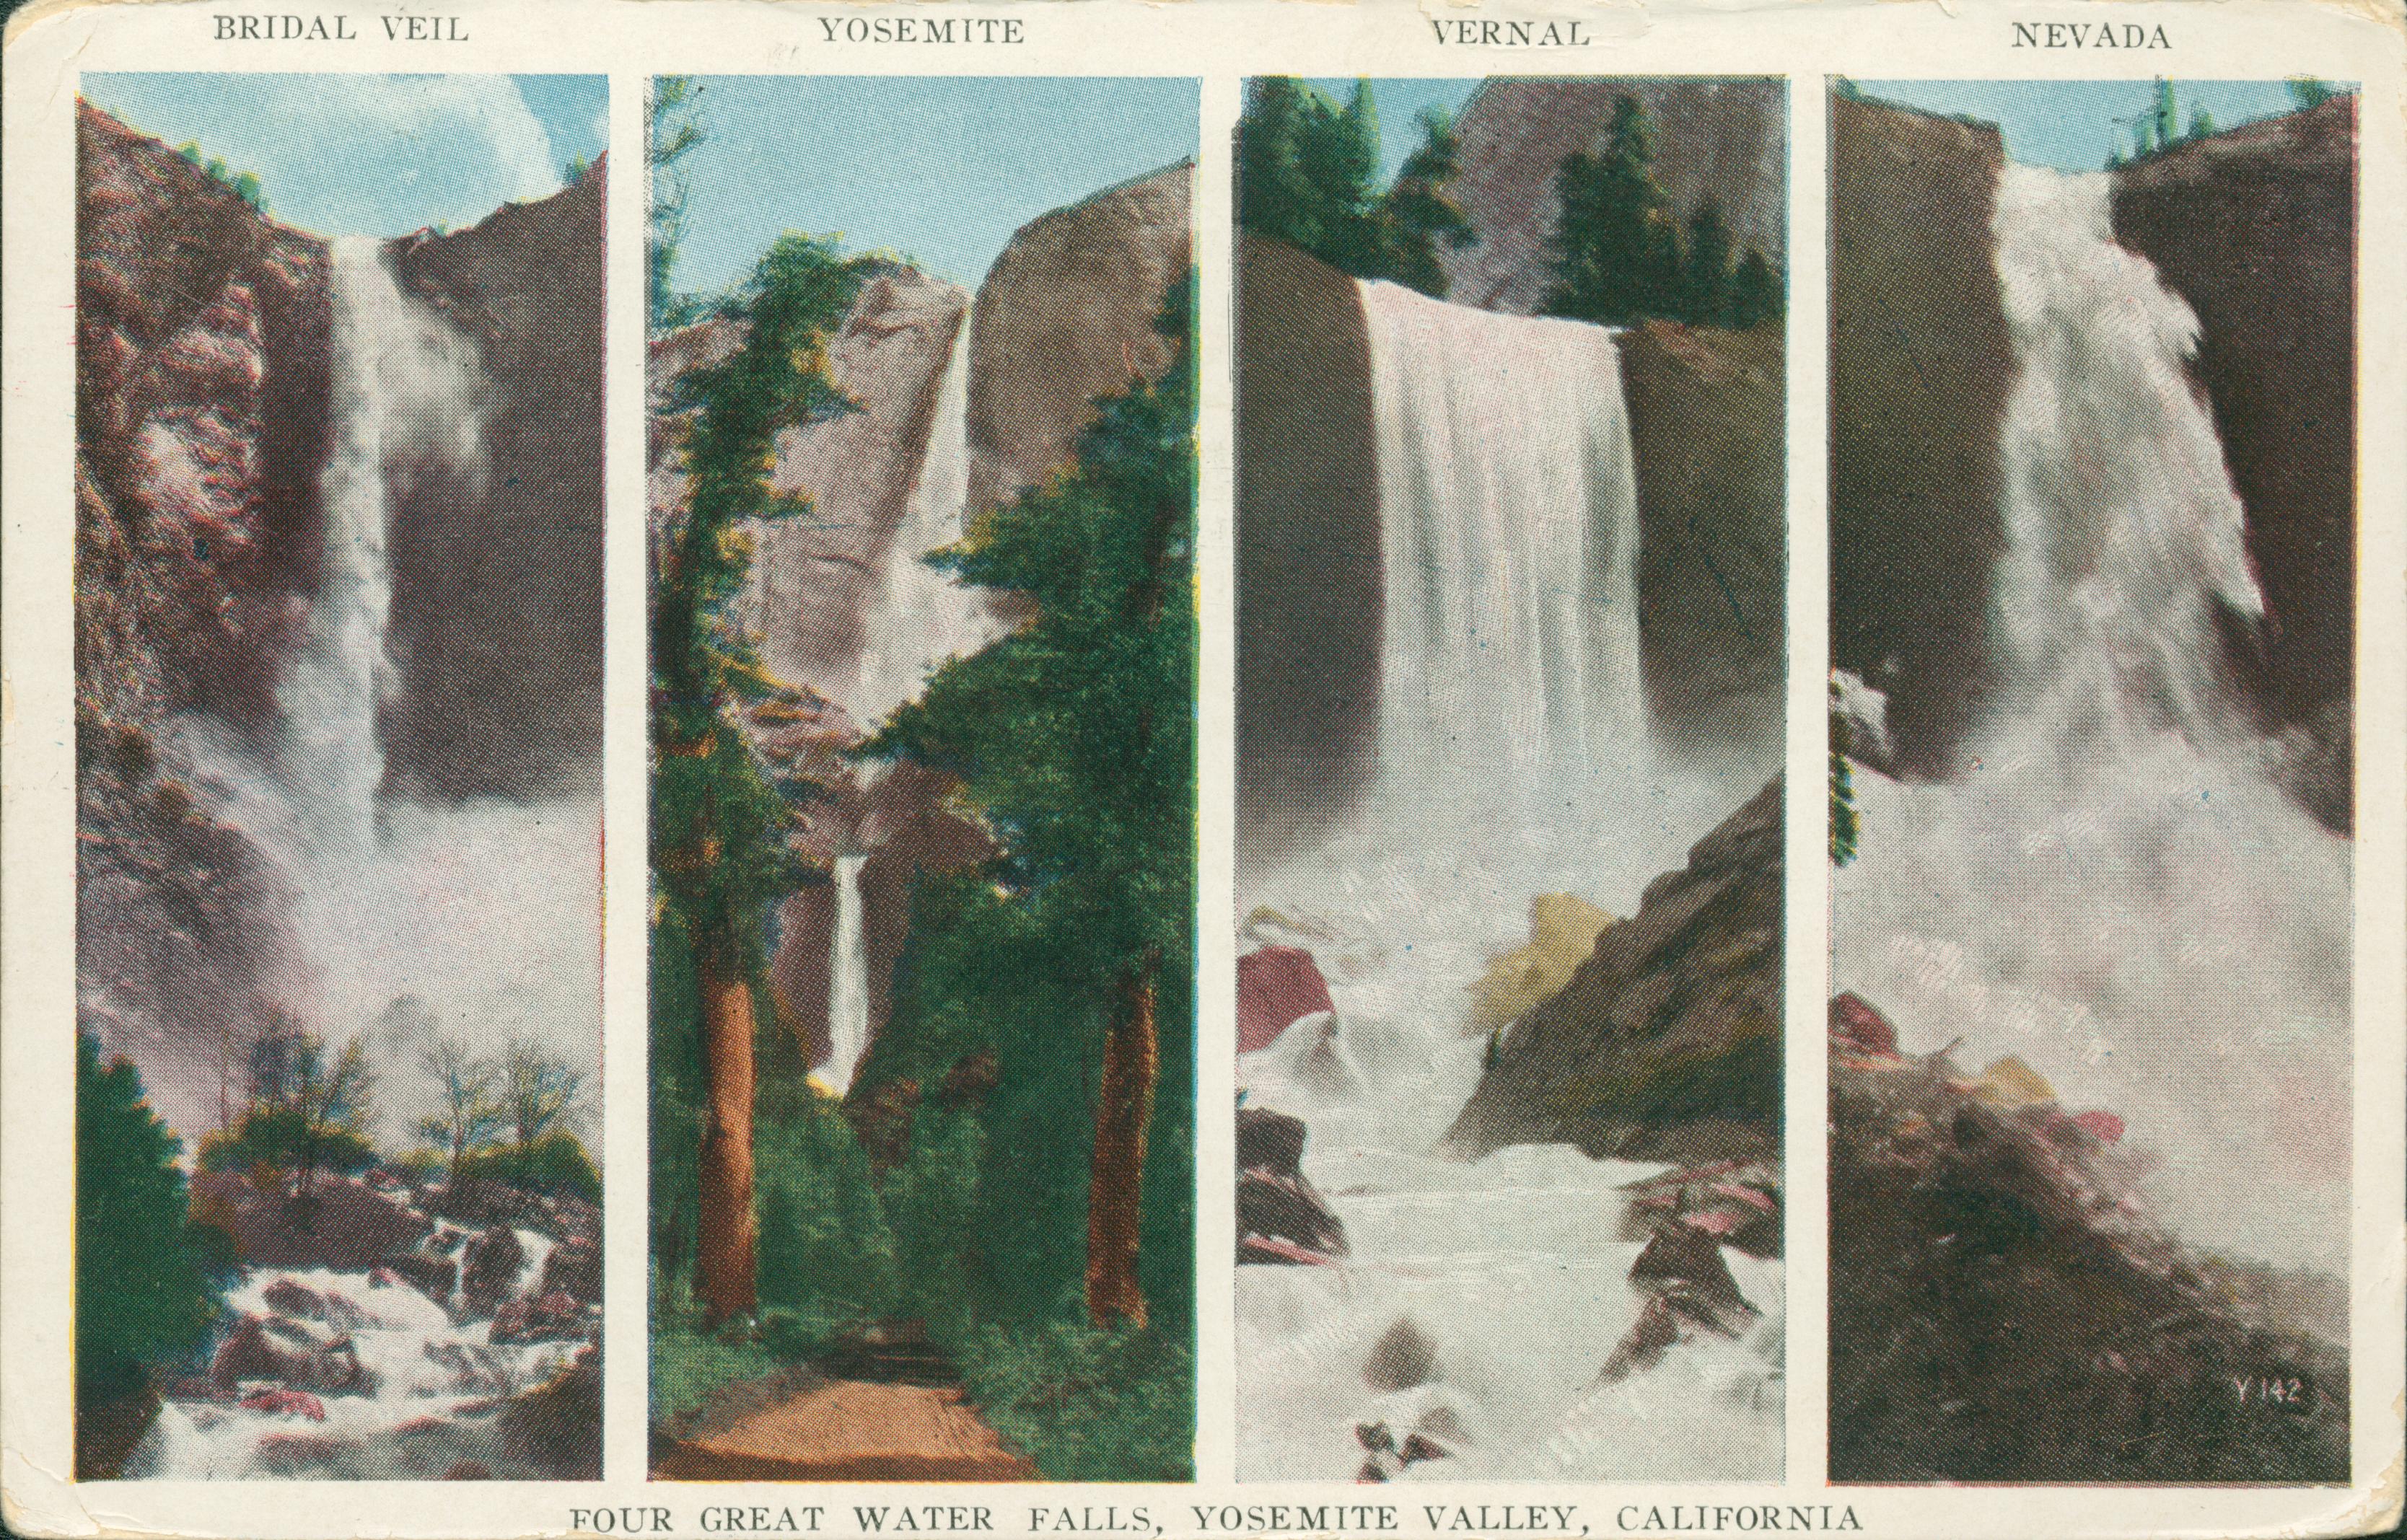 Shows views of Bridal Veil, Yosemite, Vernal and Nevada falls